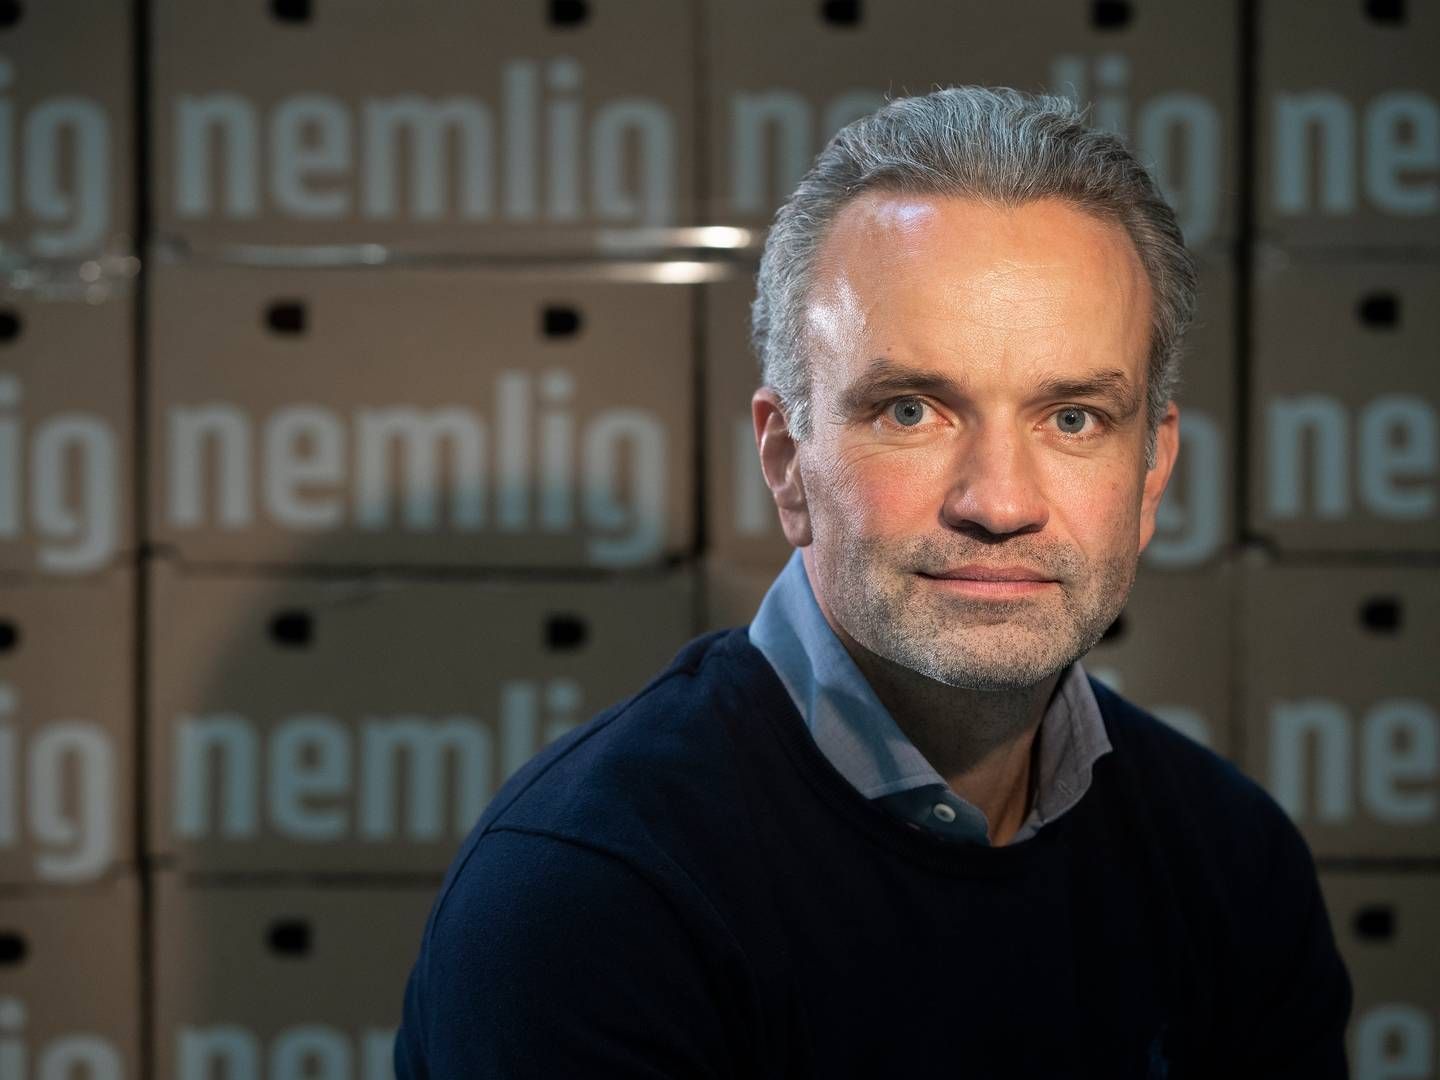 Adm. direktør Stefan Plenge stiftede Nemlig.com i 2010 og ejer i dag 27,33 pct. af onlinesupermarkedet. | Photo: Søren Bidstrup